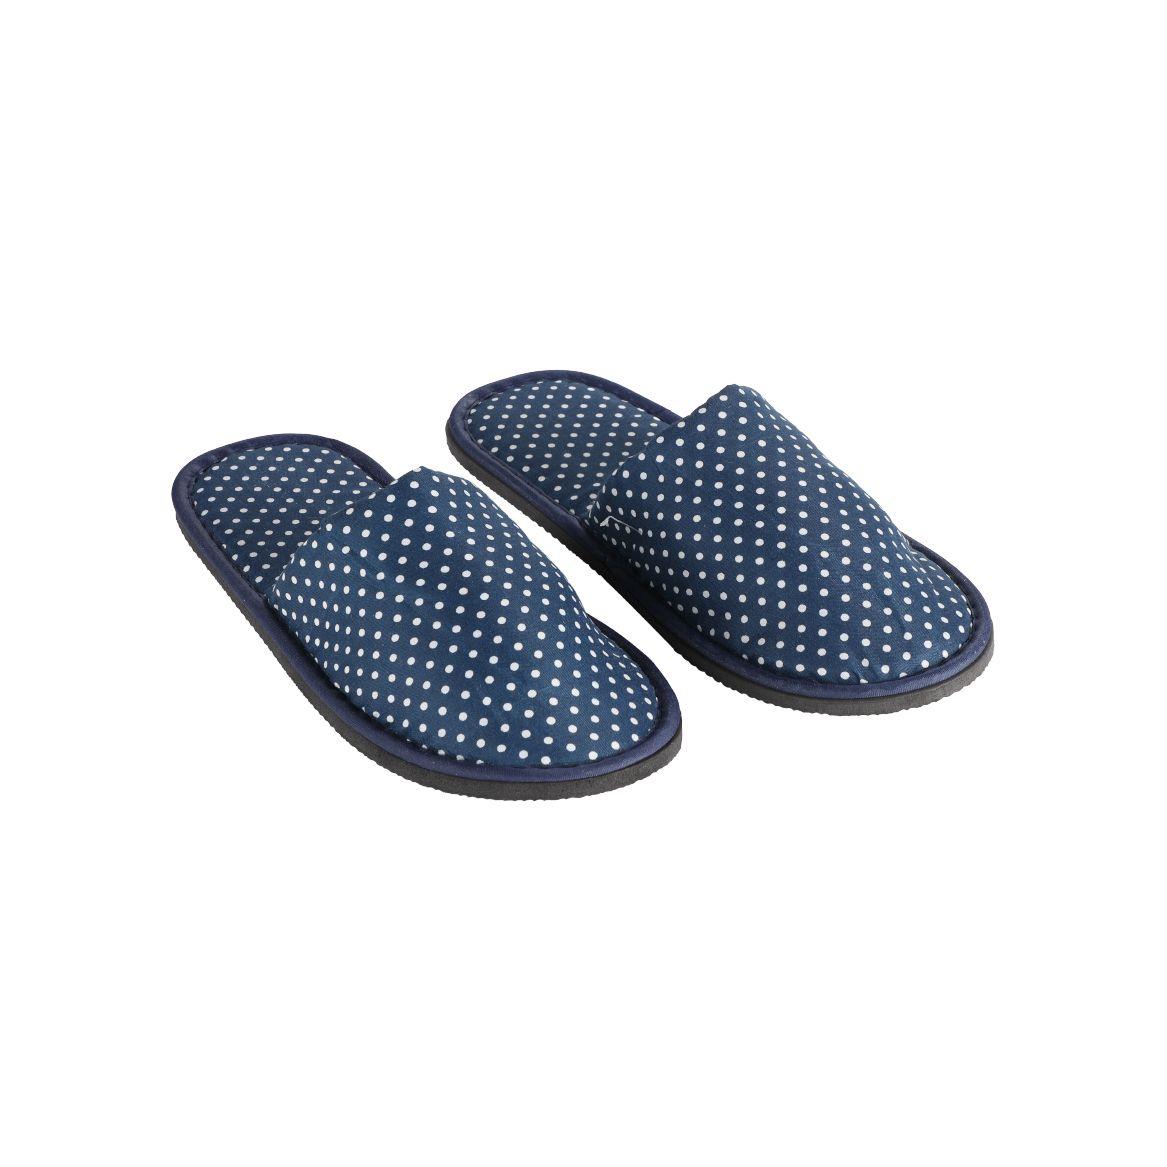 รองเท้าสลิปเปอร์ รุ่นเค-มินิทู (ขนาด 28 ซม.) - สีน้ำเงิน